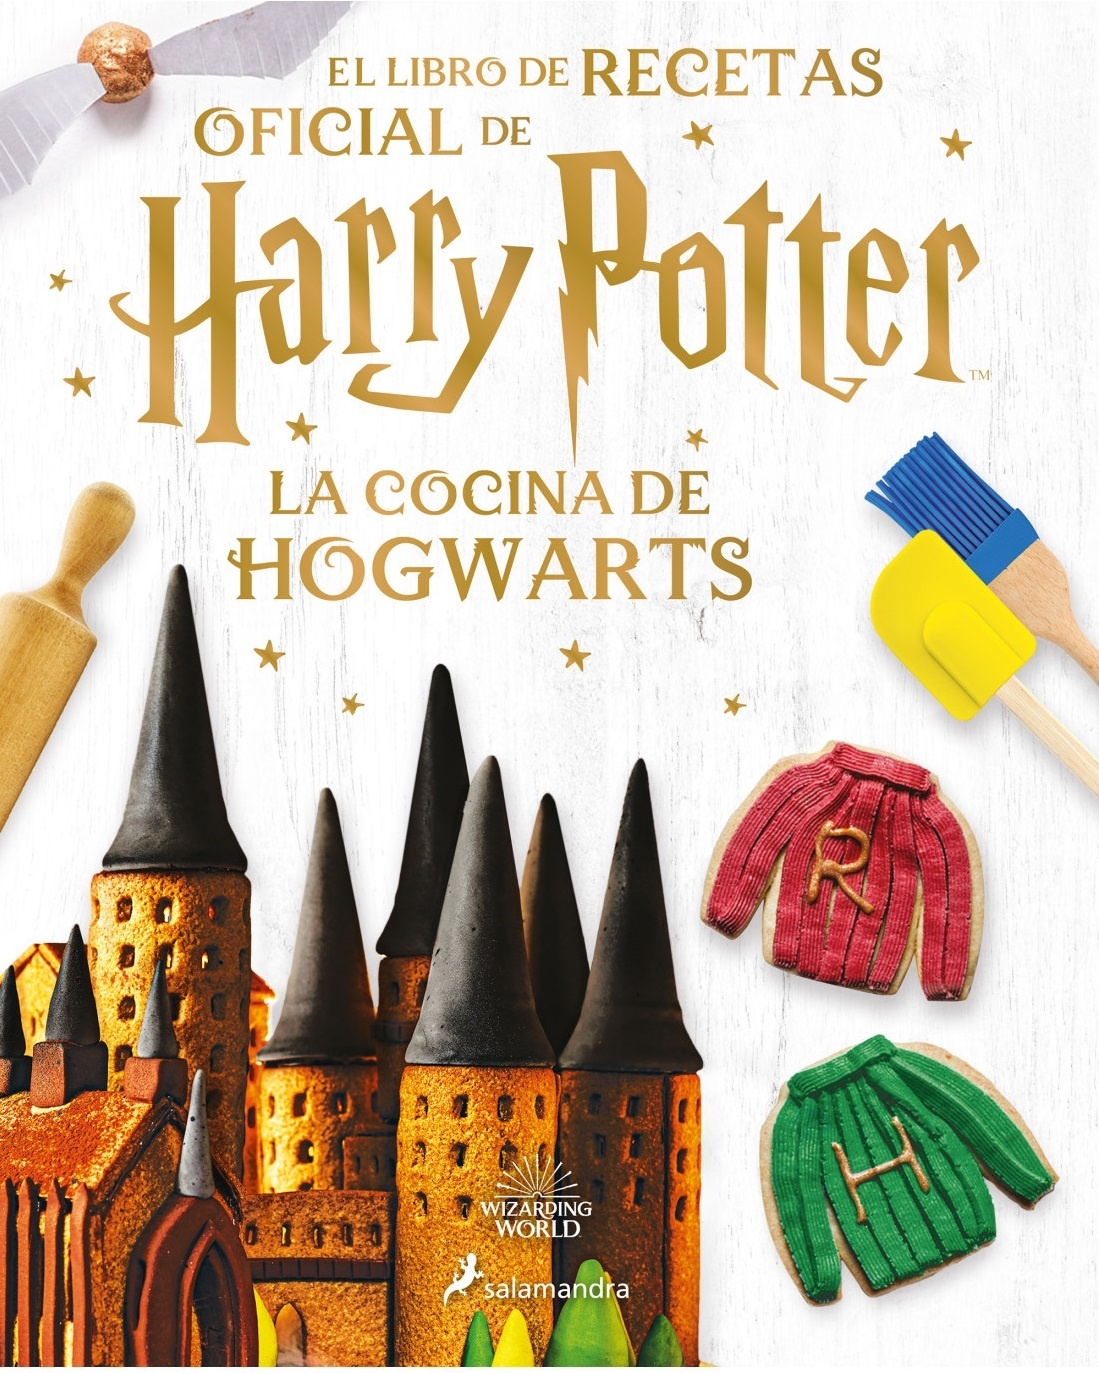 Cocina de Hogwarts, La "El libro de recetas oficial de Harry Potter"